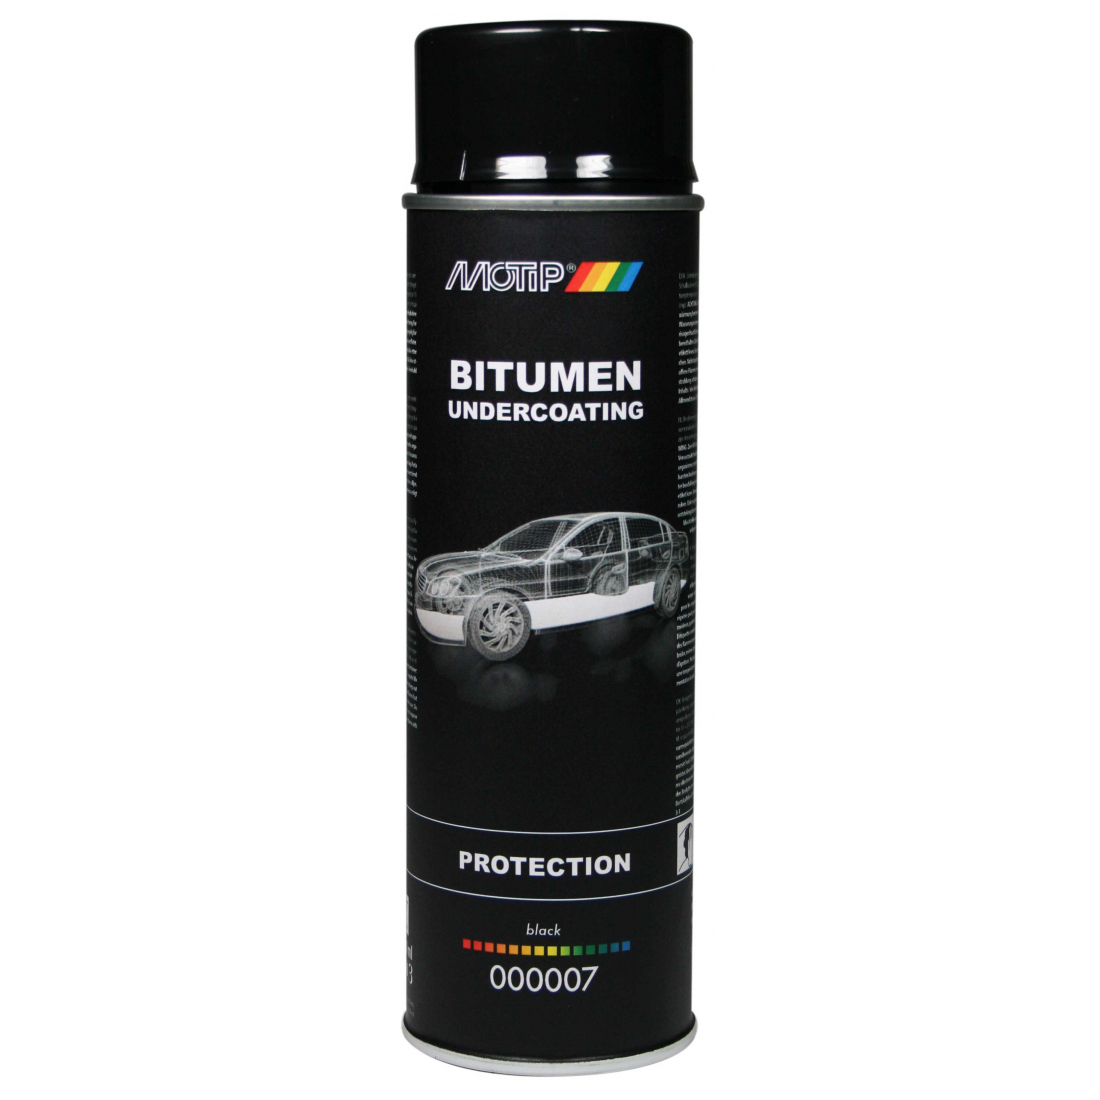 Motip Unterbodenschutz-Spray Bitumen 500 ml 000007, 1x